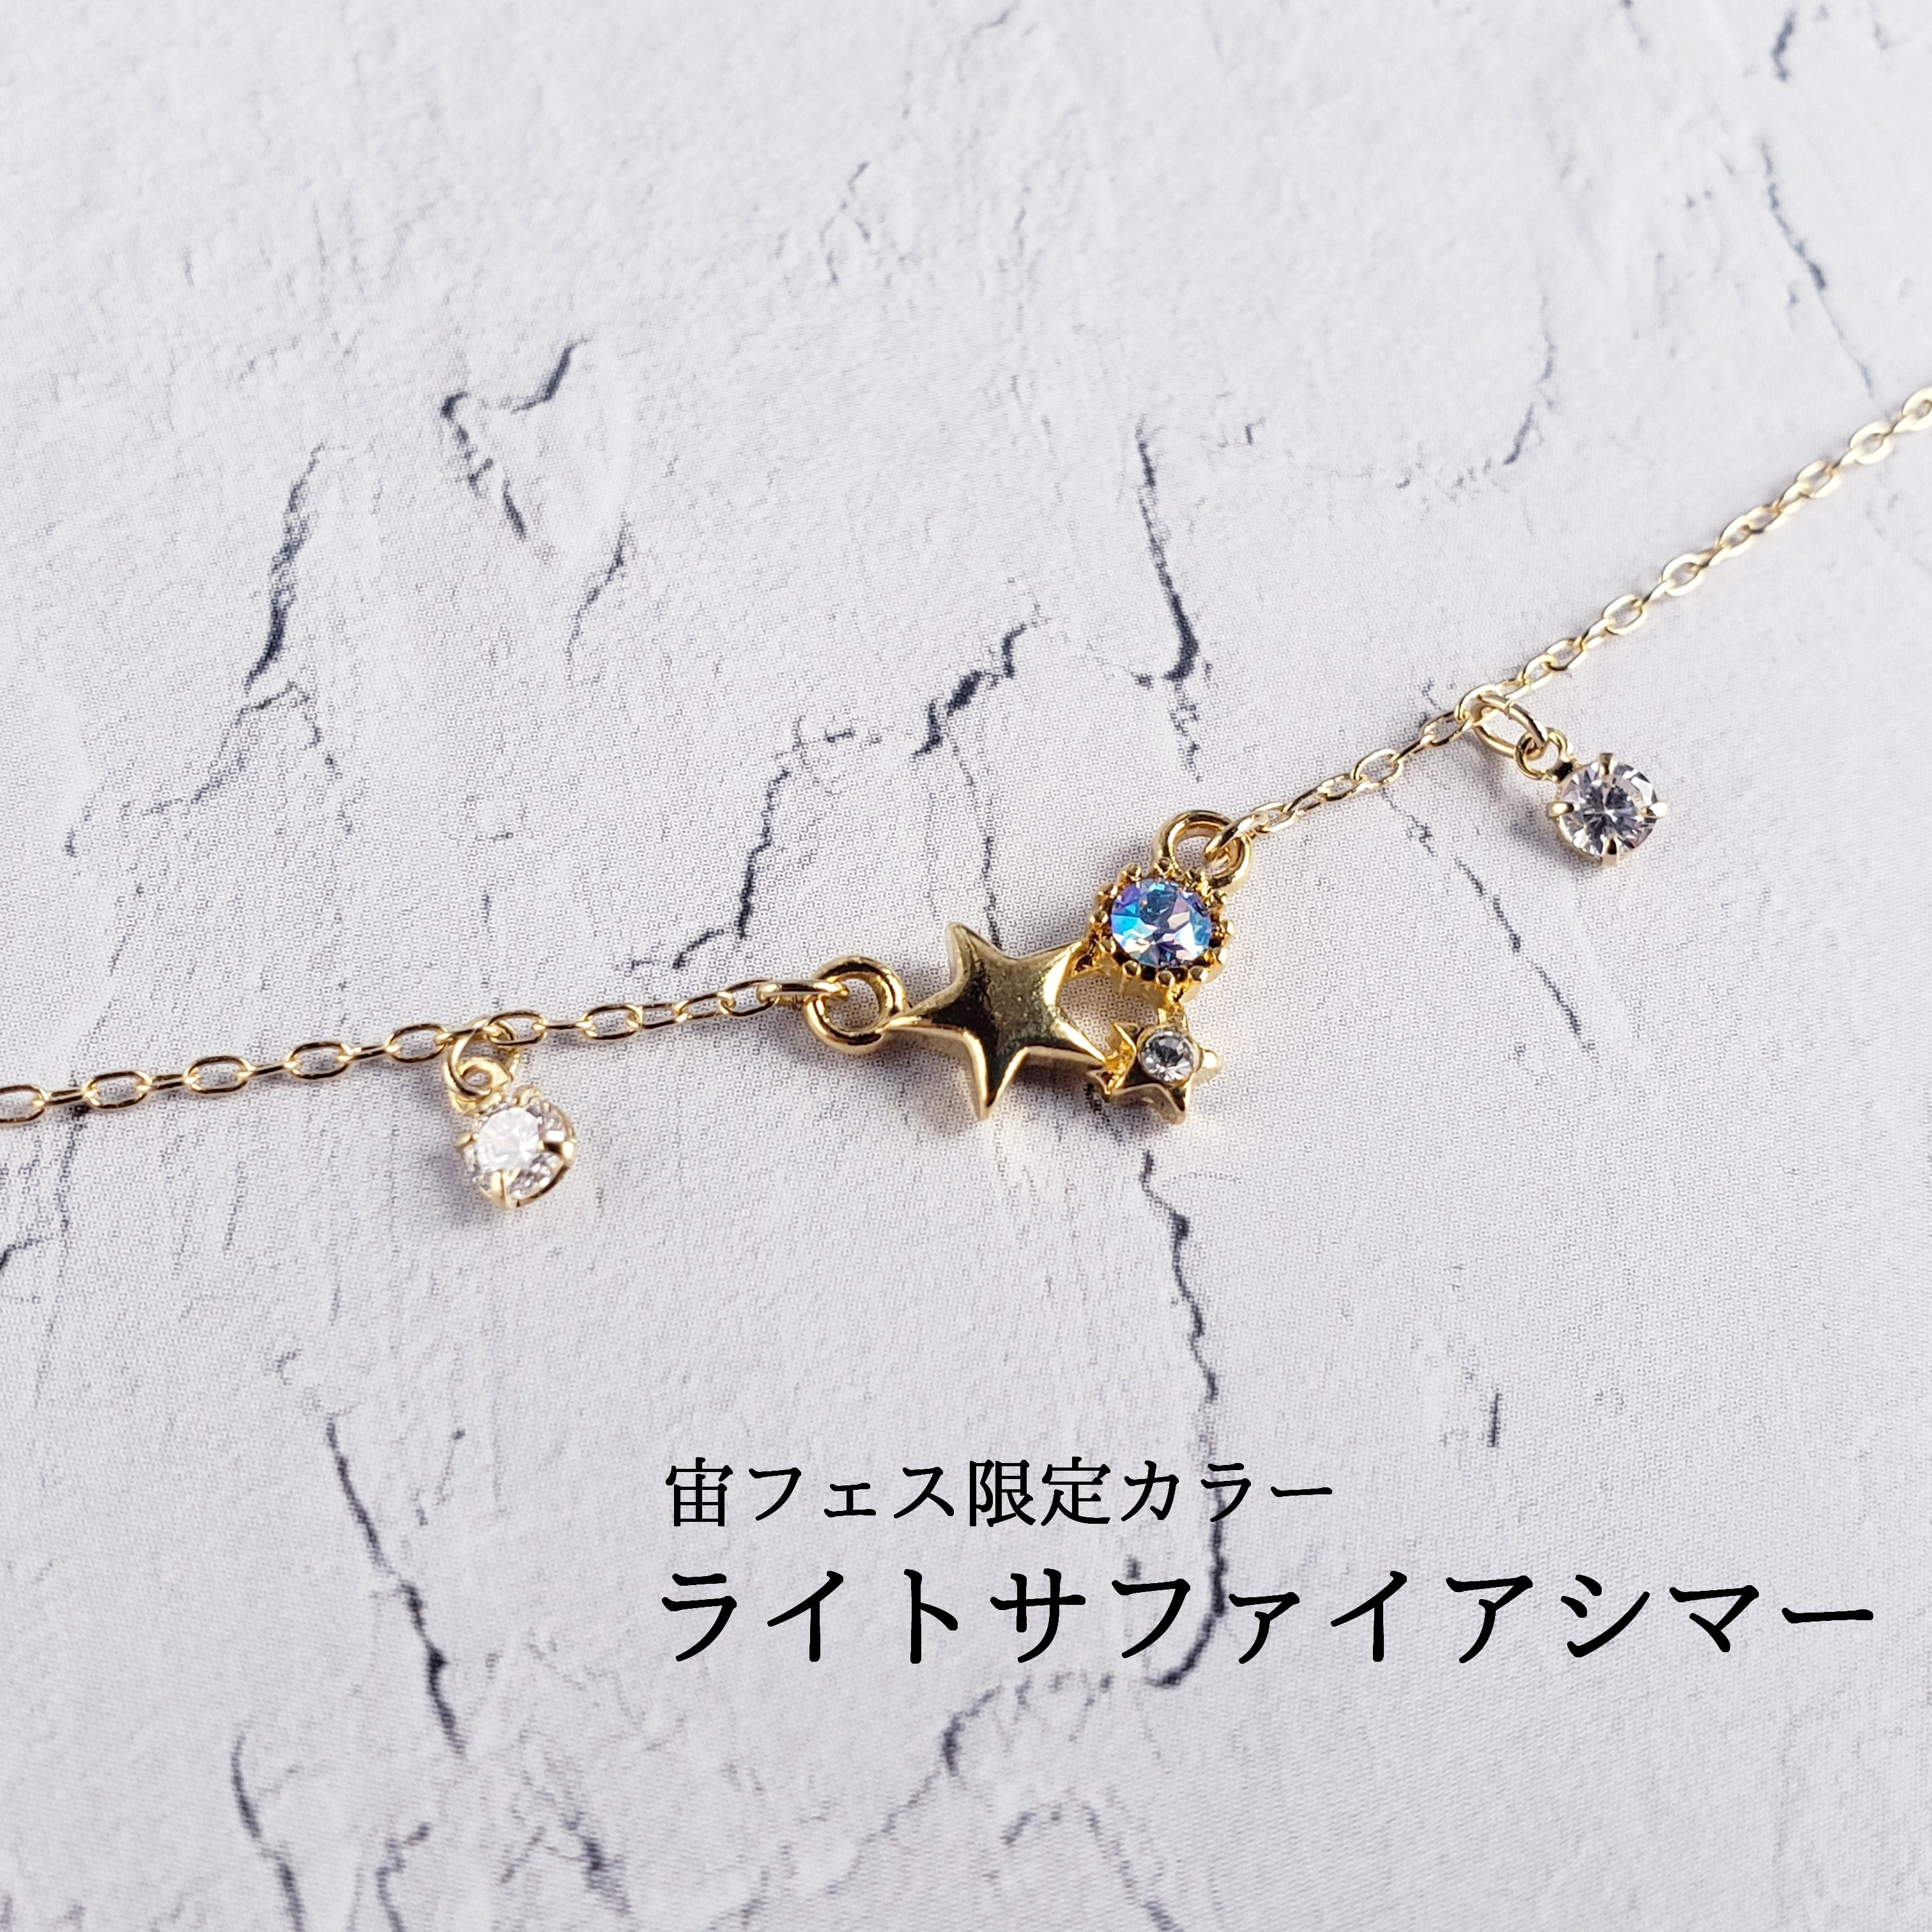 日本製造 ブレスレット 宝石 | www.oitachuorc.com